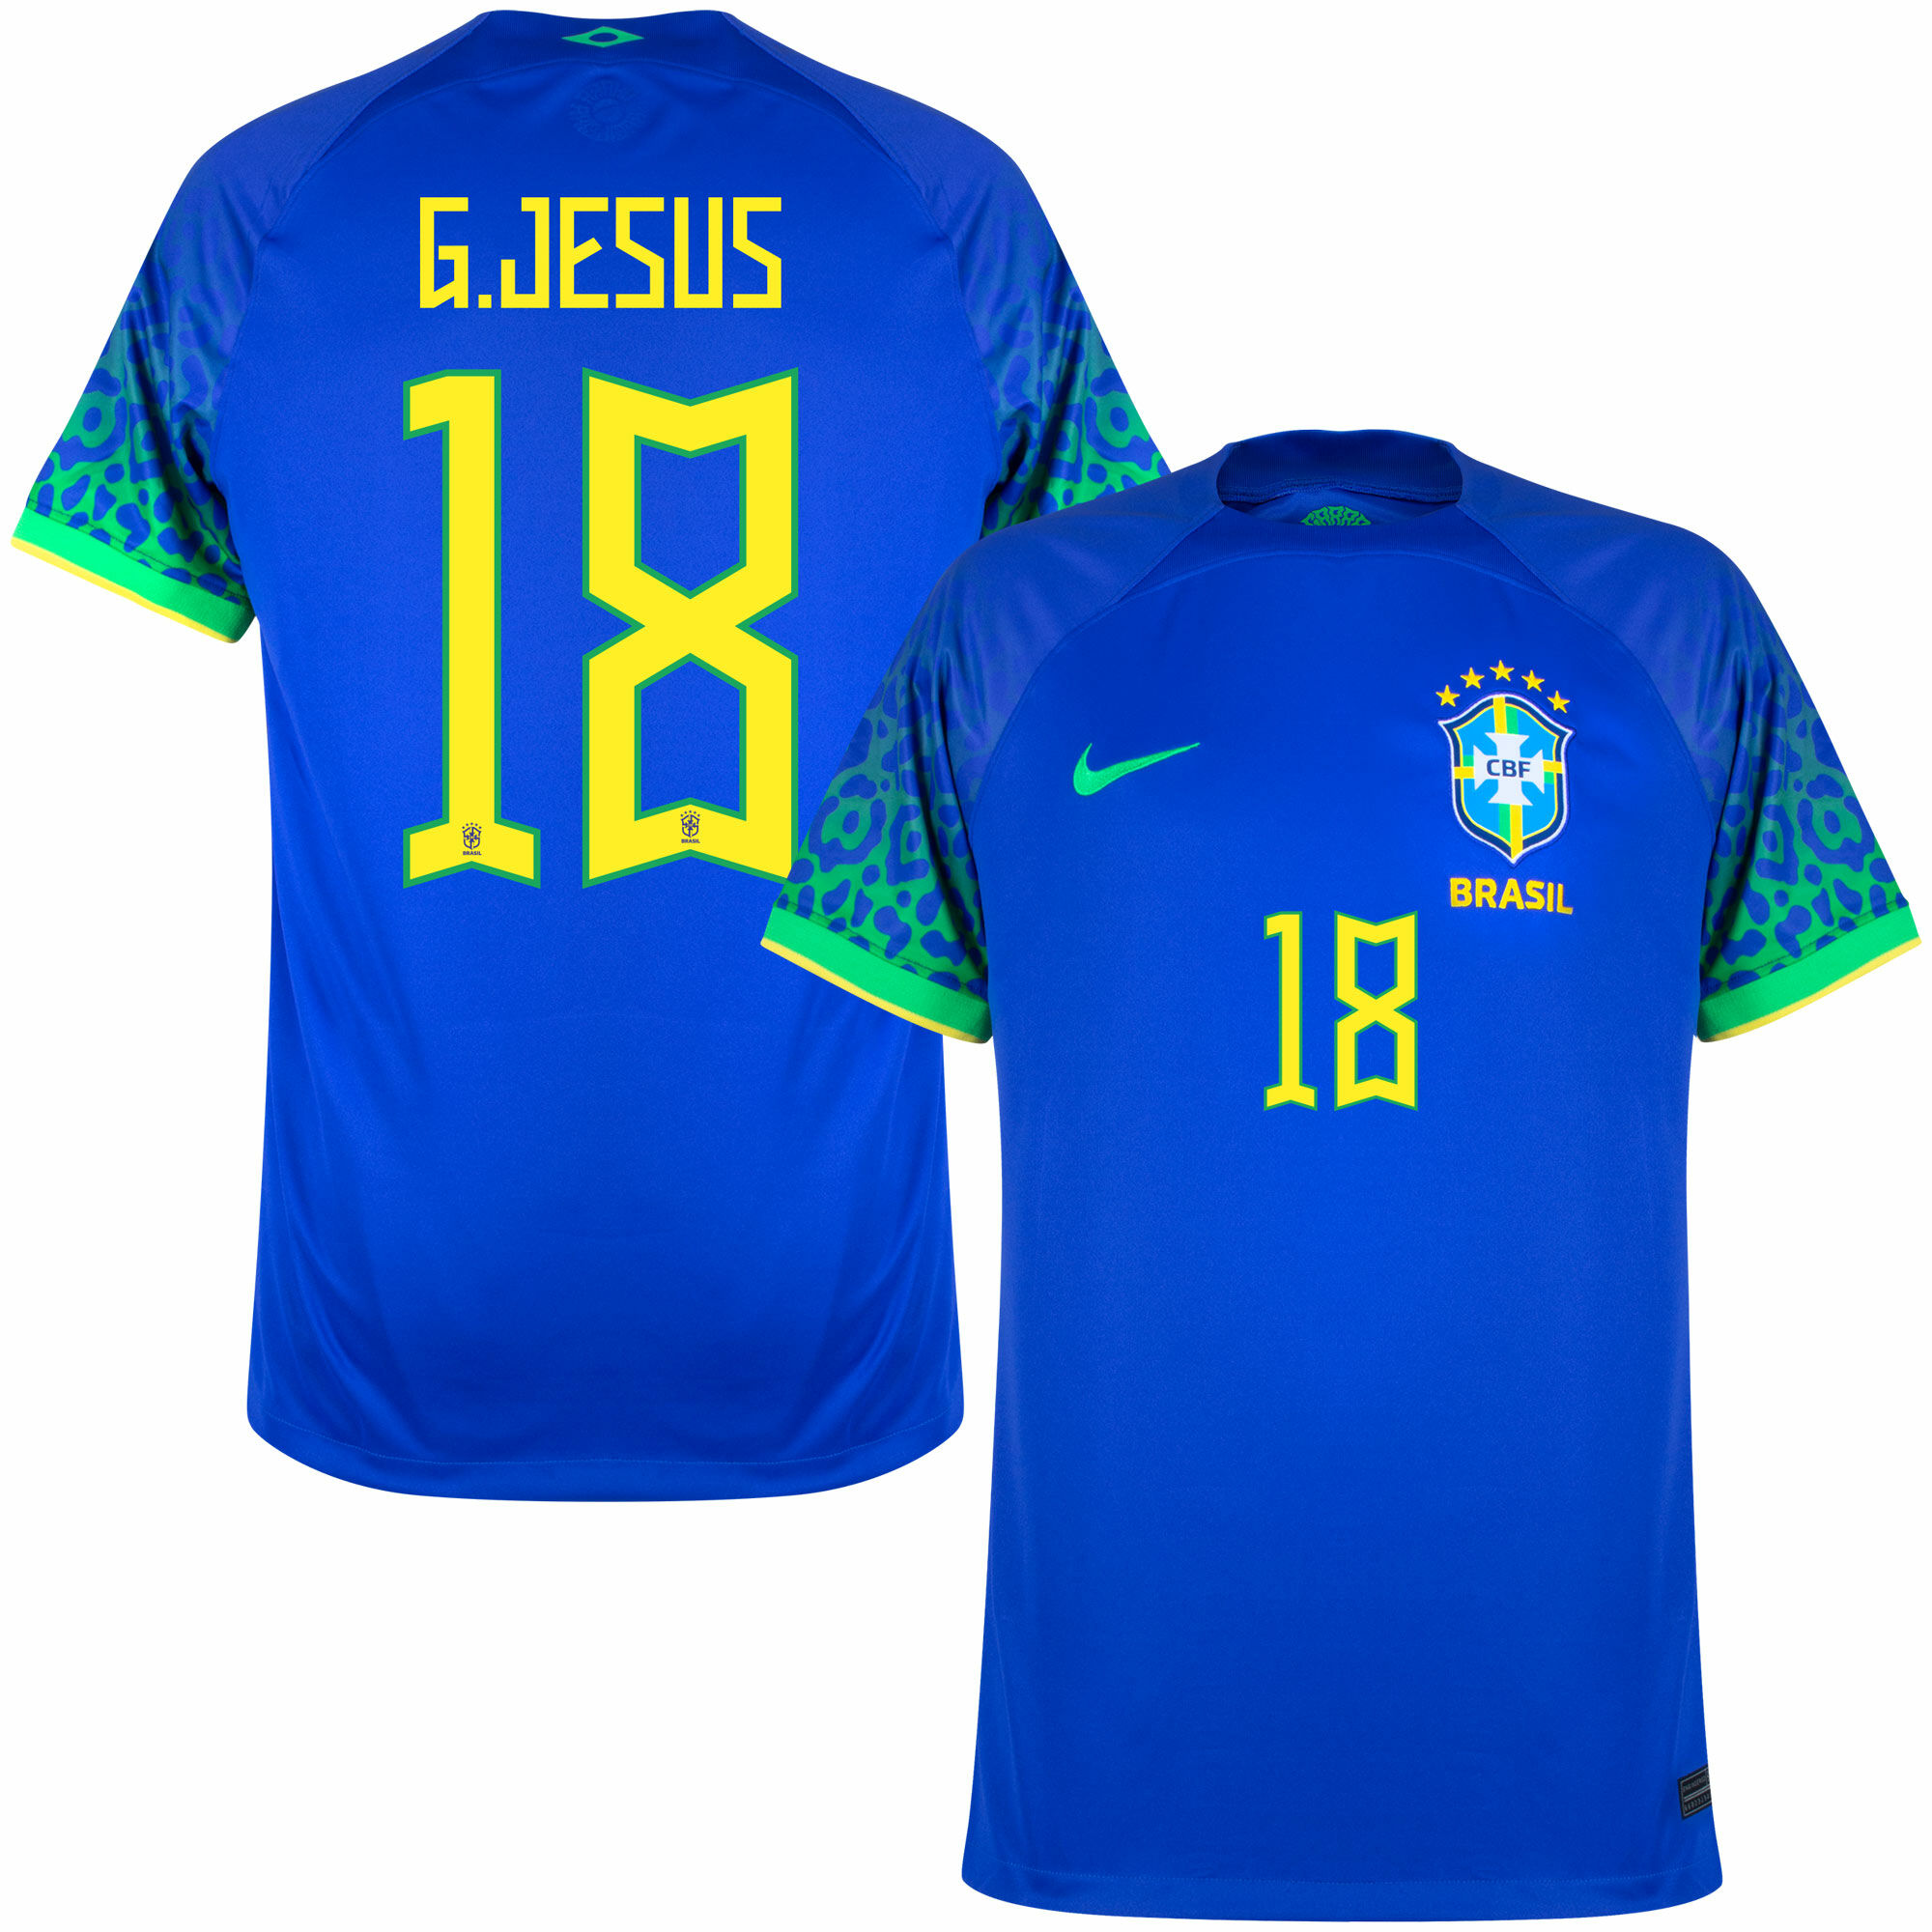 Brazílie - Dres fotbalový - Gabriel Jesus, číslo 18, oficiální potisk, sezóna 2022/23, modrý, venkovní